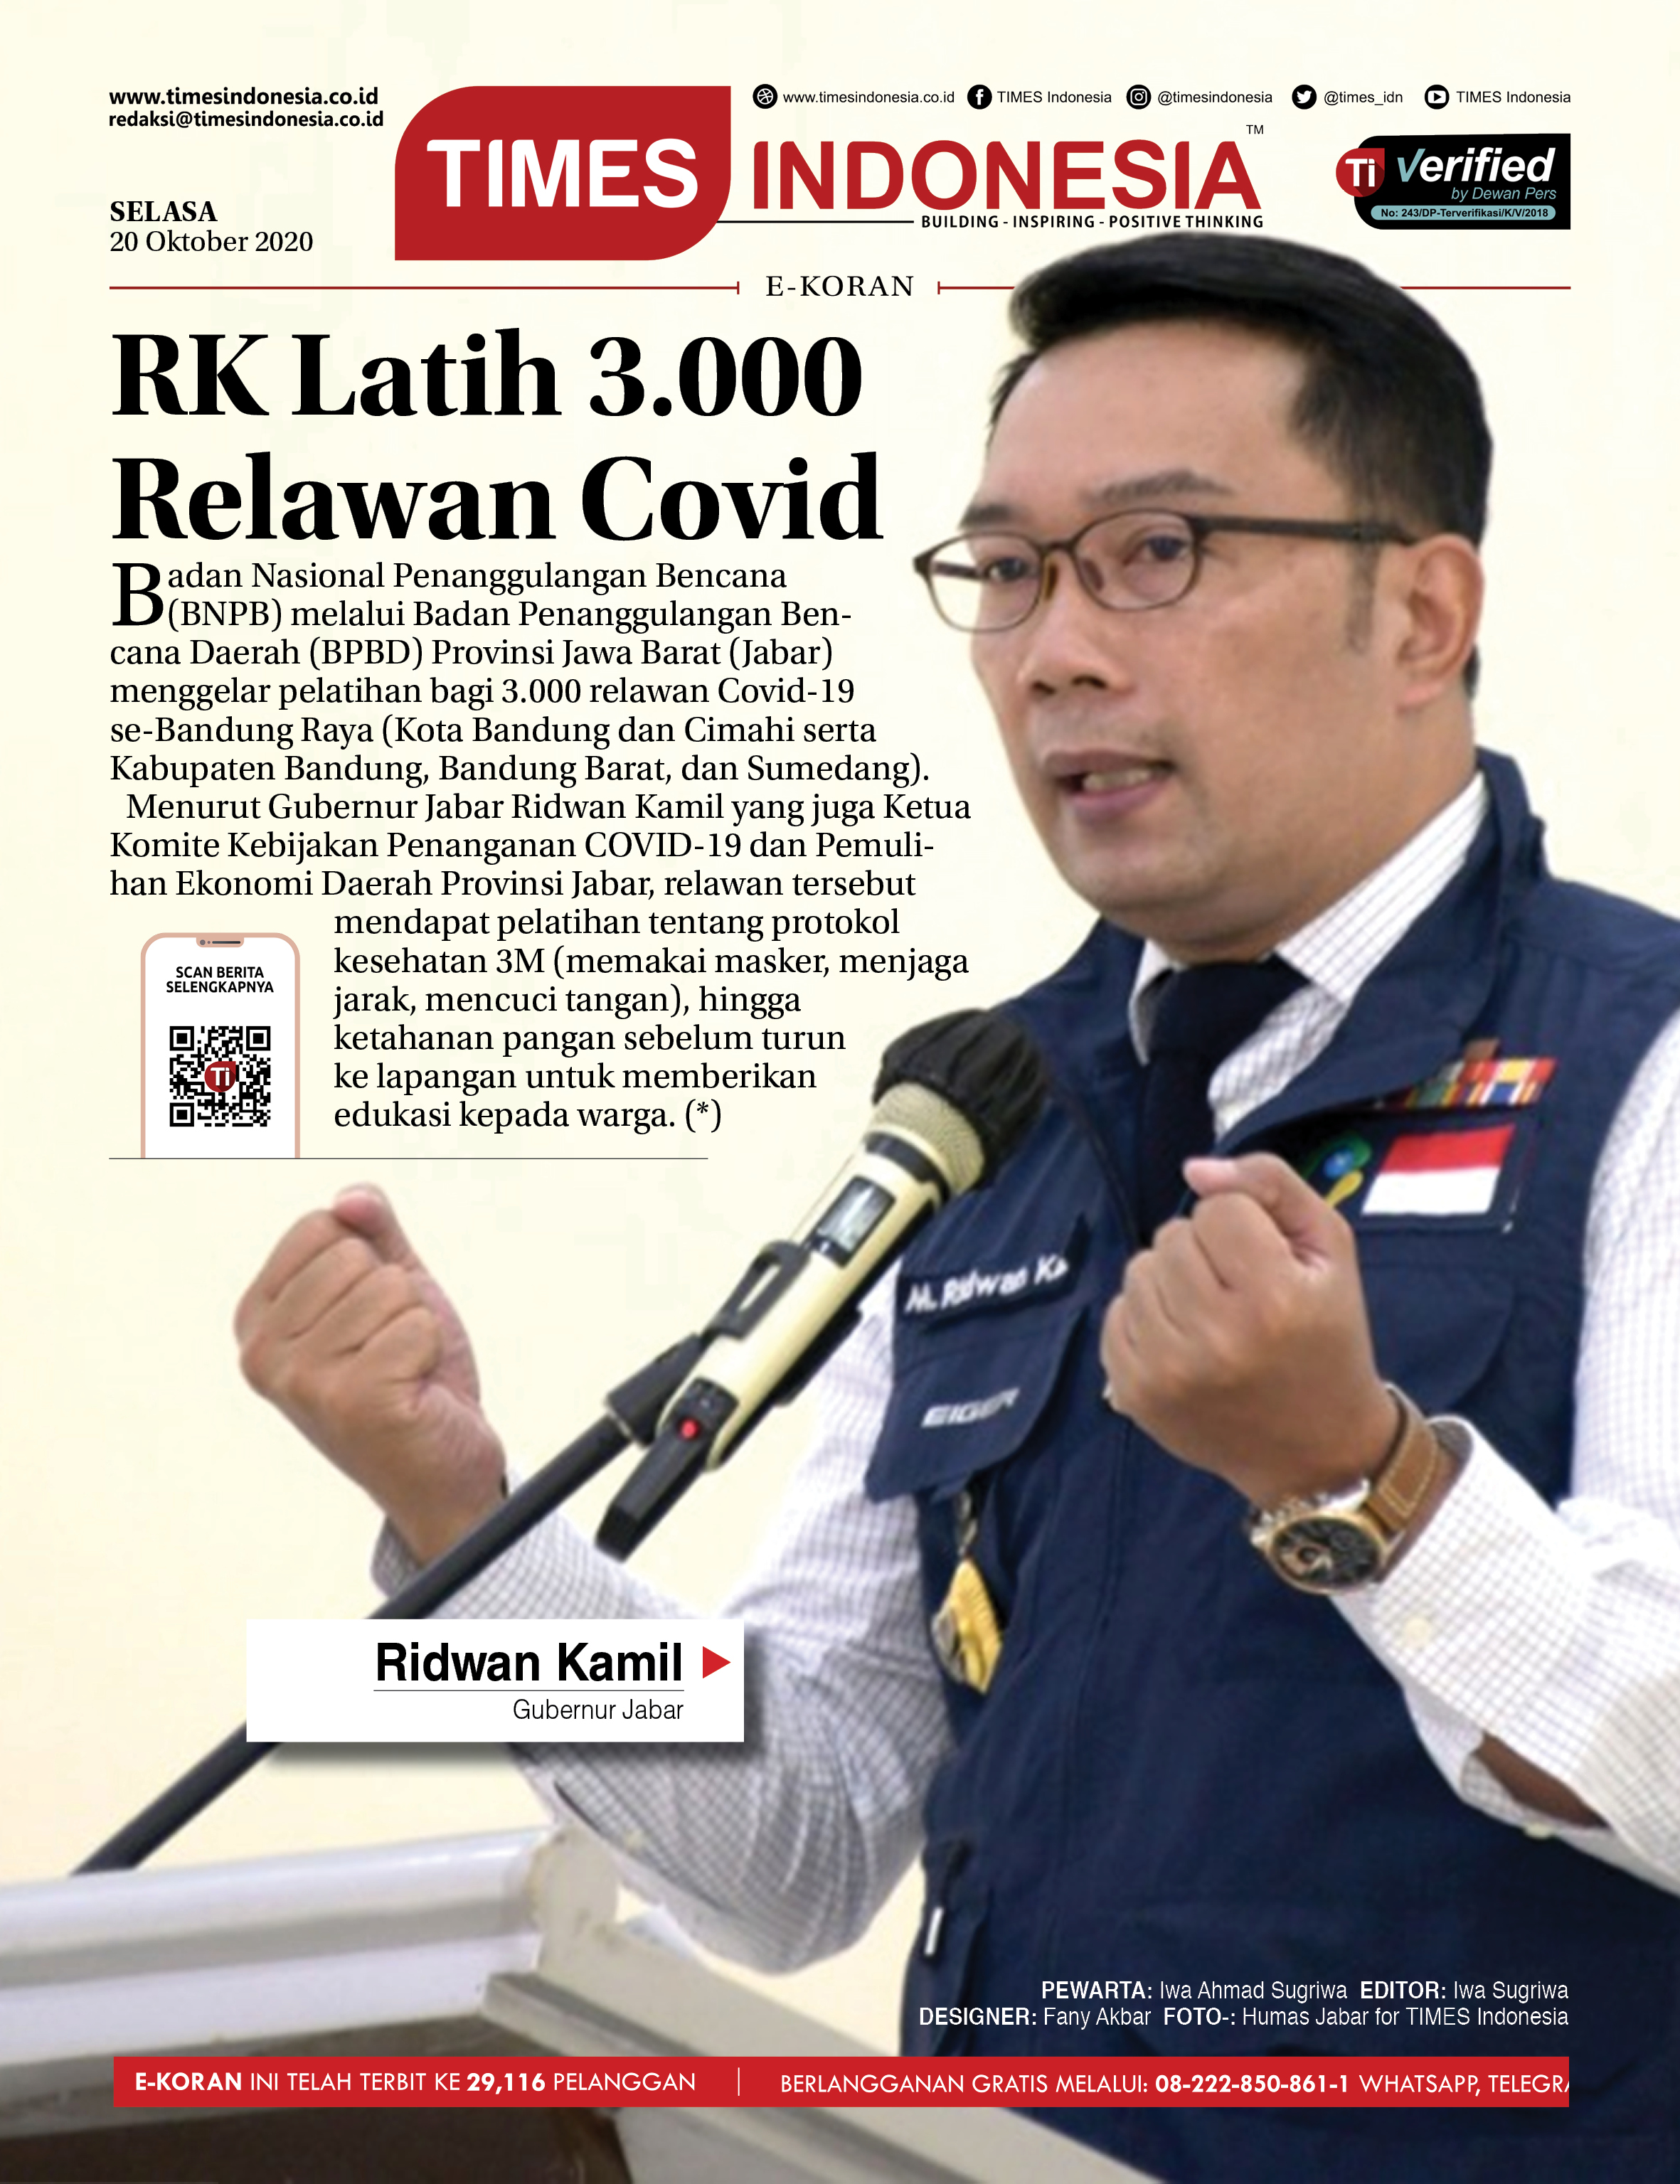 Ekoran-20-10-2020-Ridwan-Kamil-Buka-Pelatihan-3.000-Relawan-Covid-19-Jabar.jpg